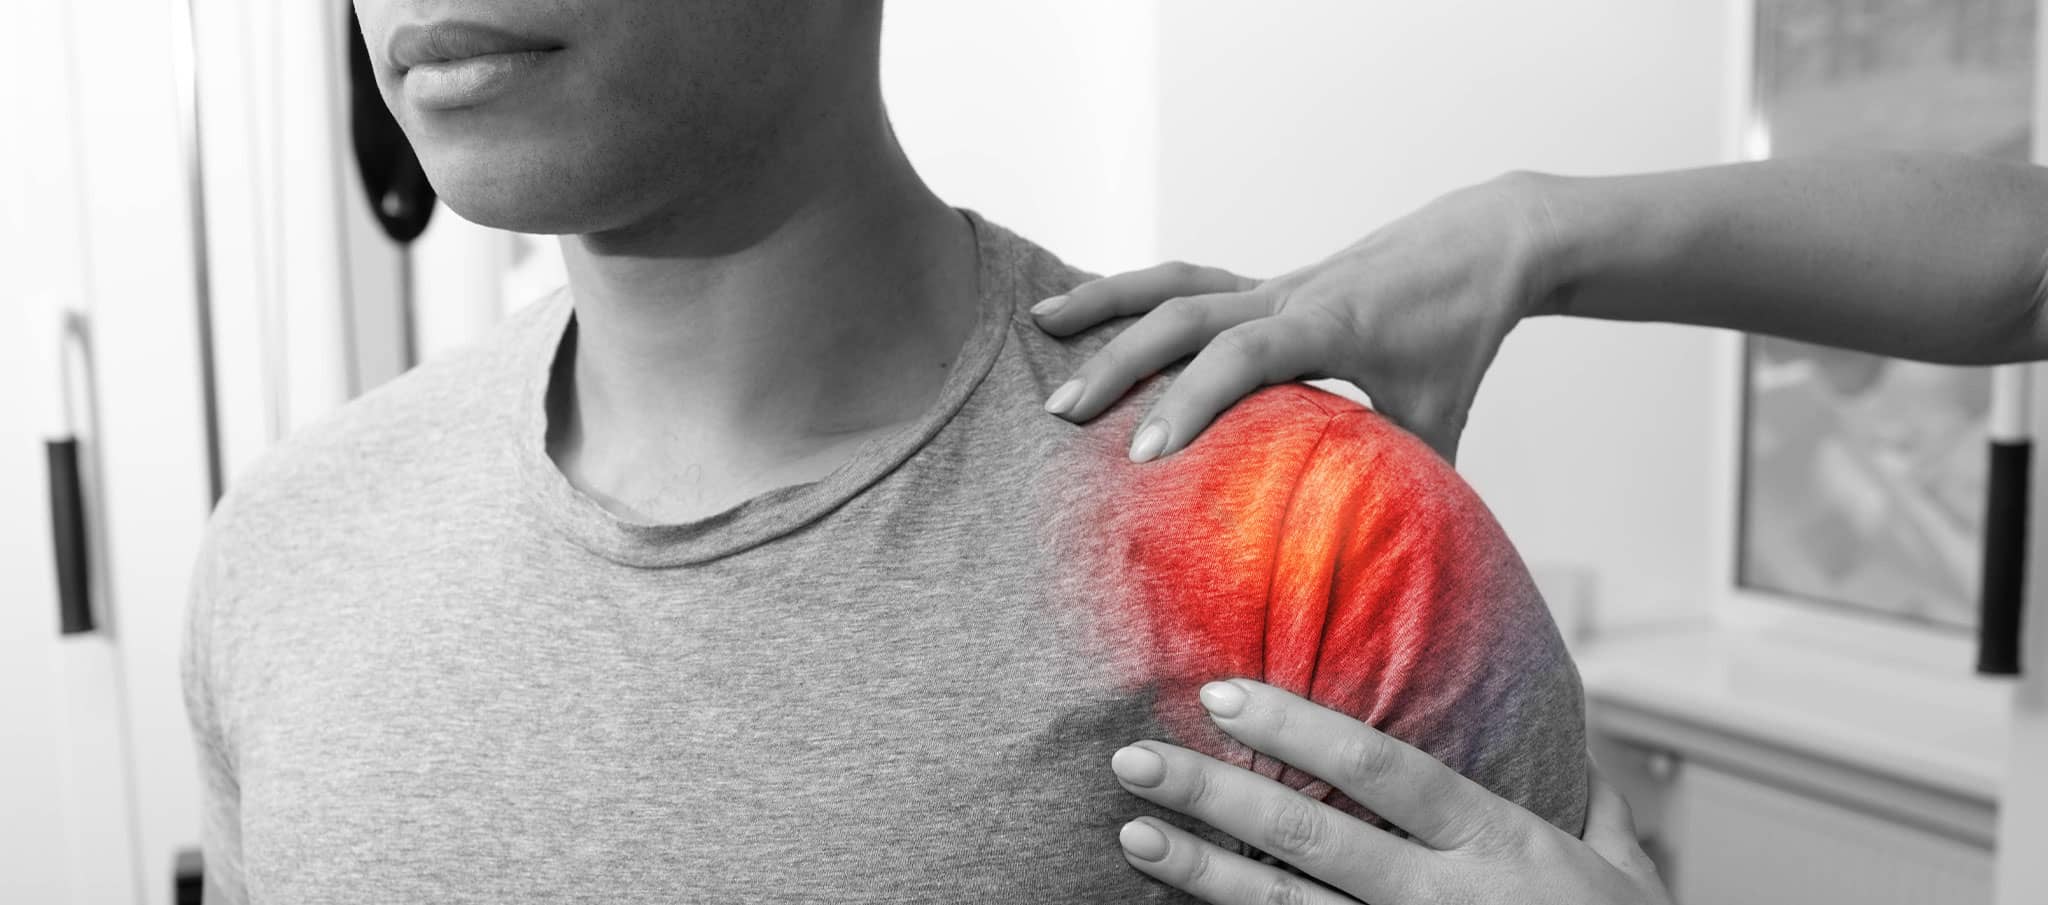 Douleur à l'épaule : est-ce une fracture ? | Dr Paillard | Paris